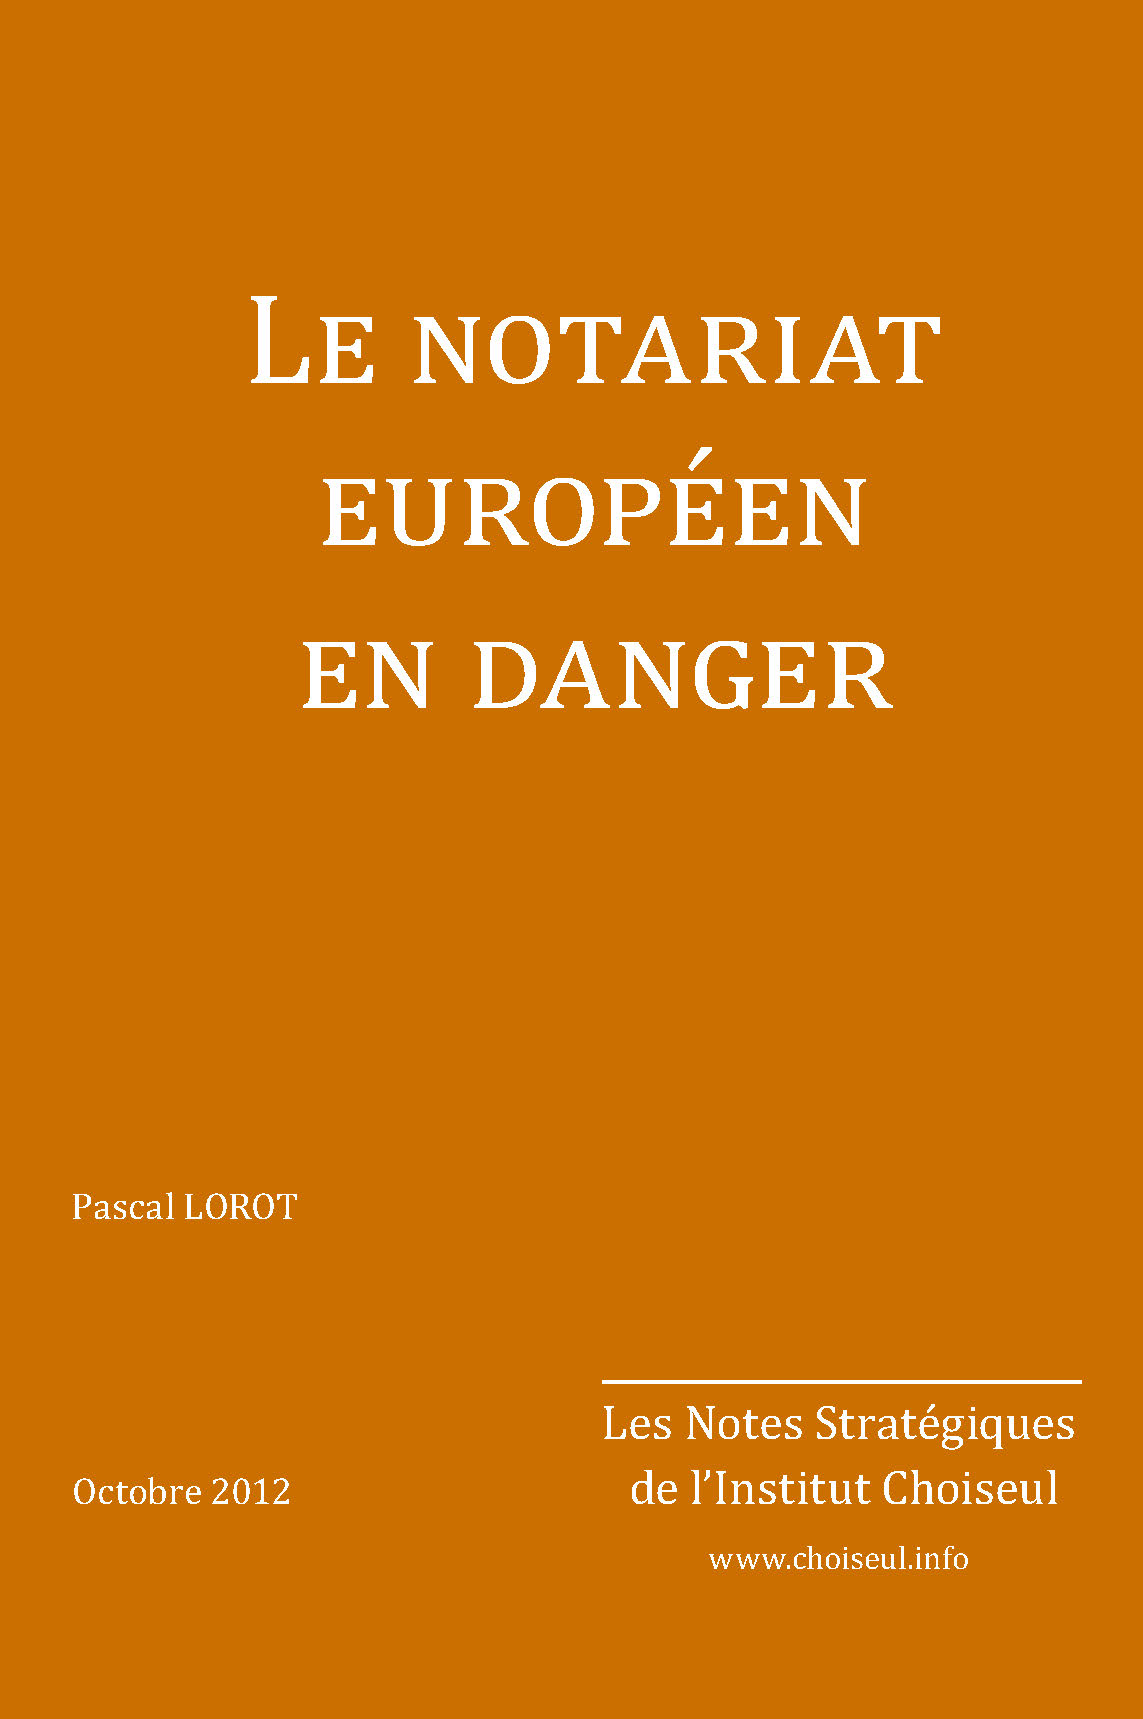 Le notariat européen en danger